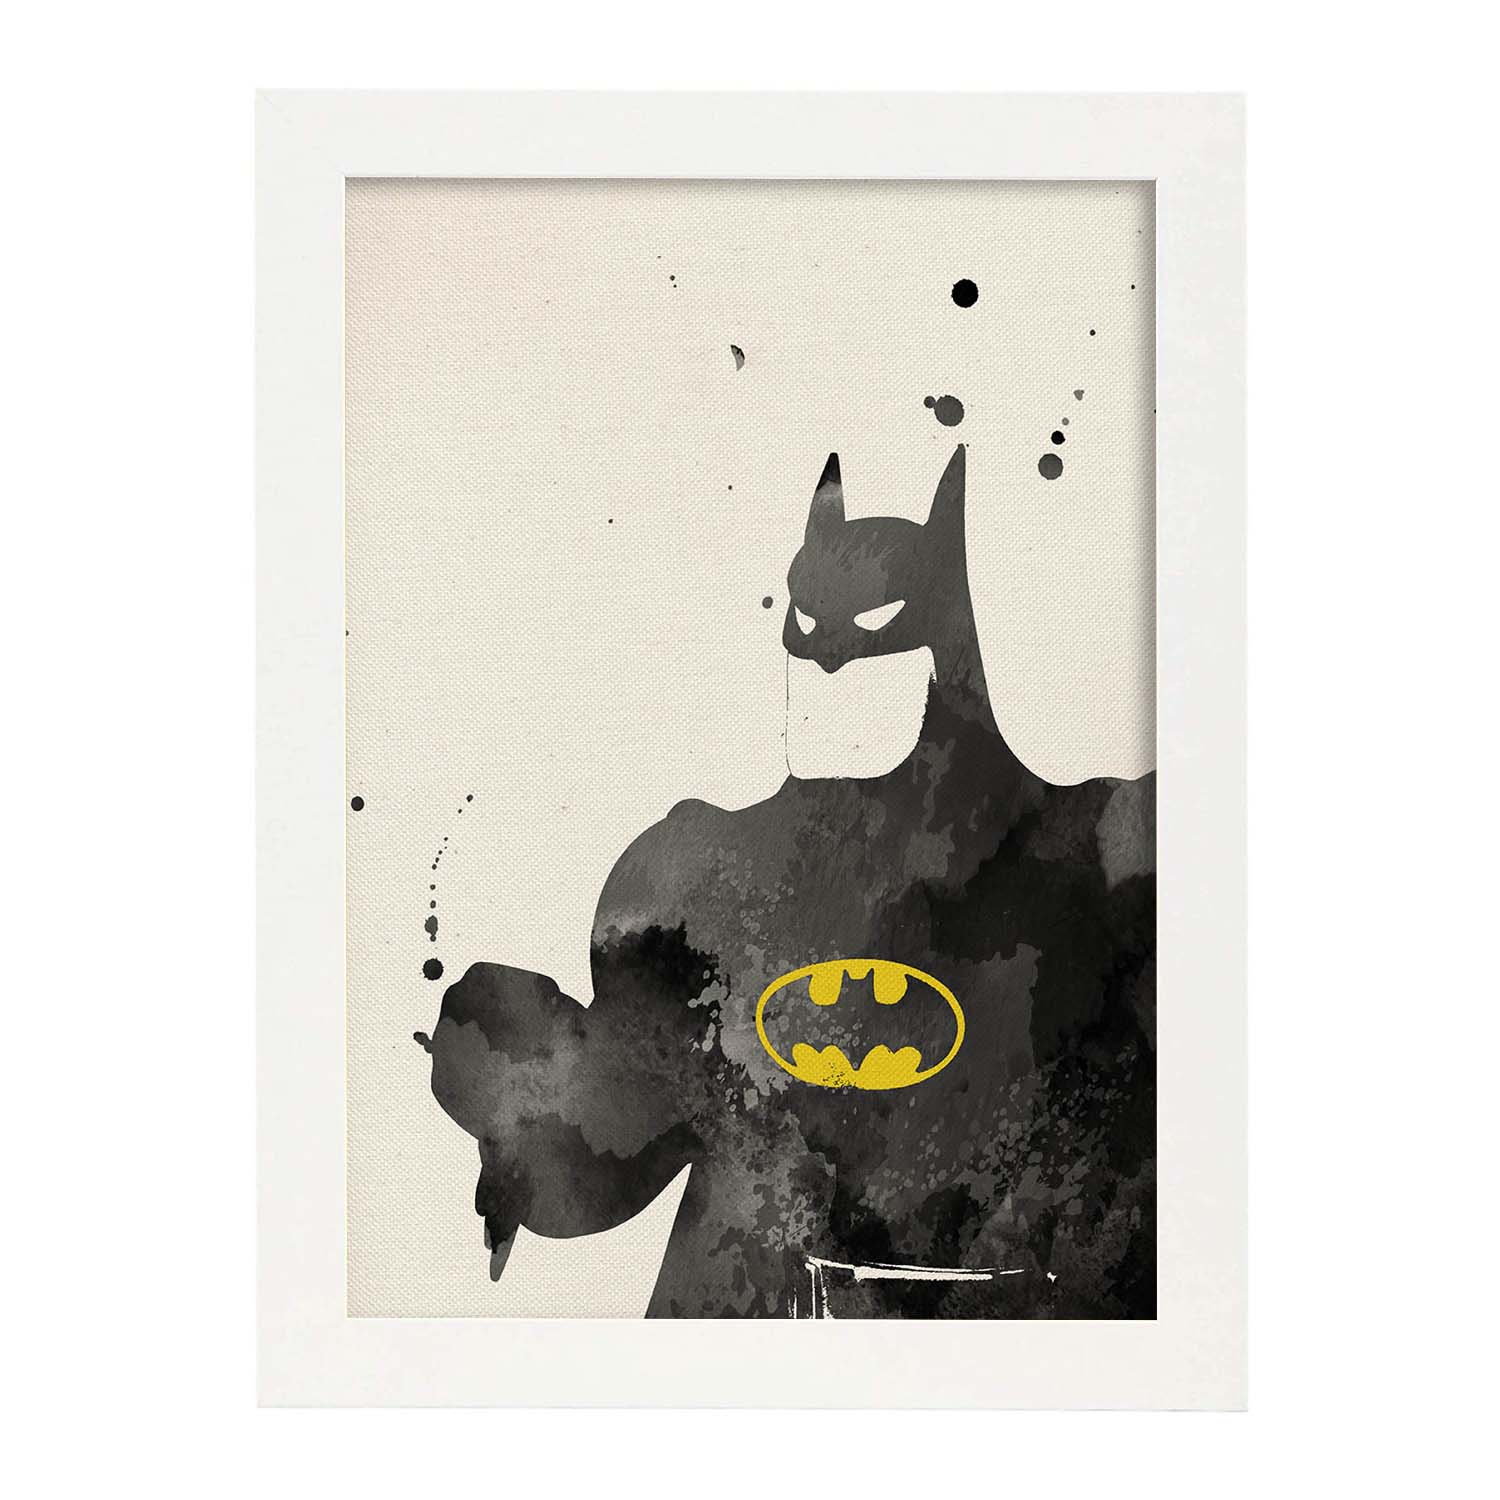 Poster de Batman 2. Láminas de cine, películas, y actores. Posters de películas antiguas con estilo acuarela.-Artwork-Nacnic-A4-Marco Blanco-Nacnic Estudio SL